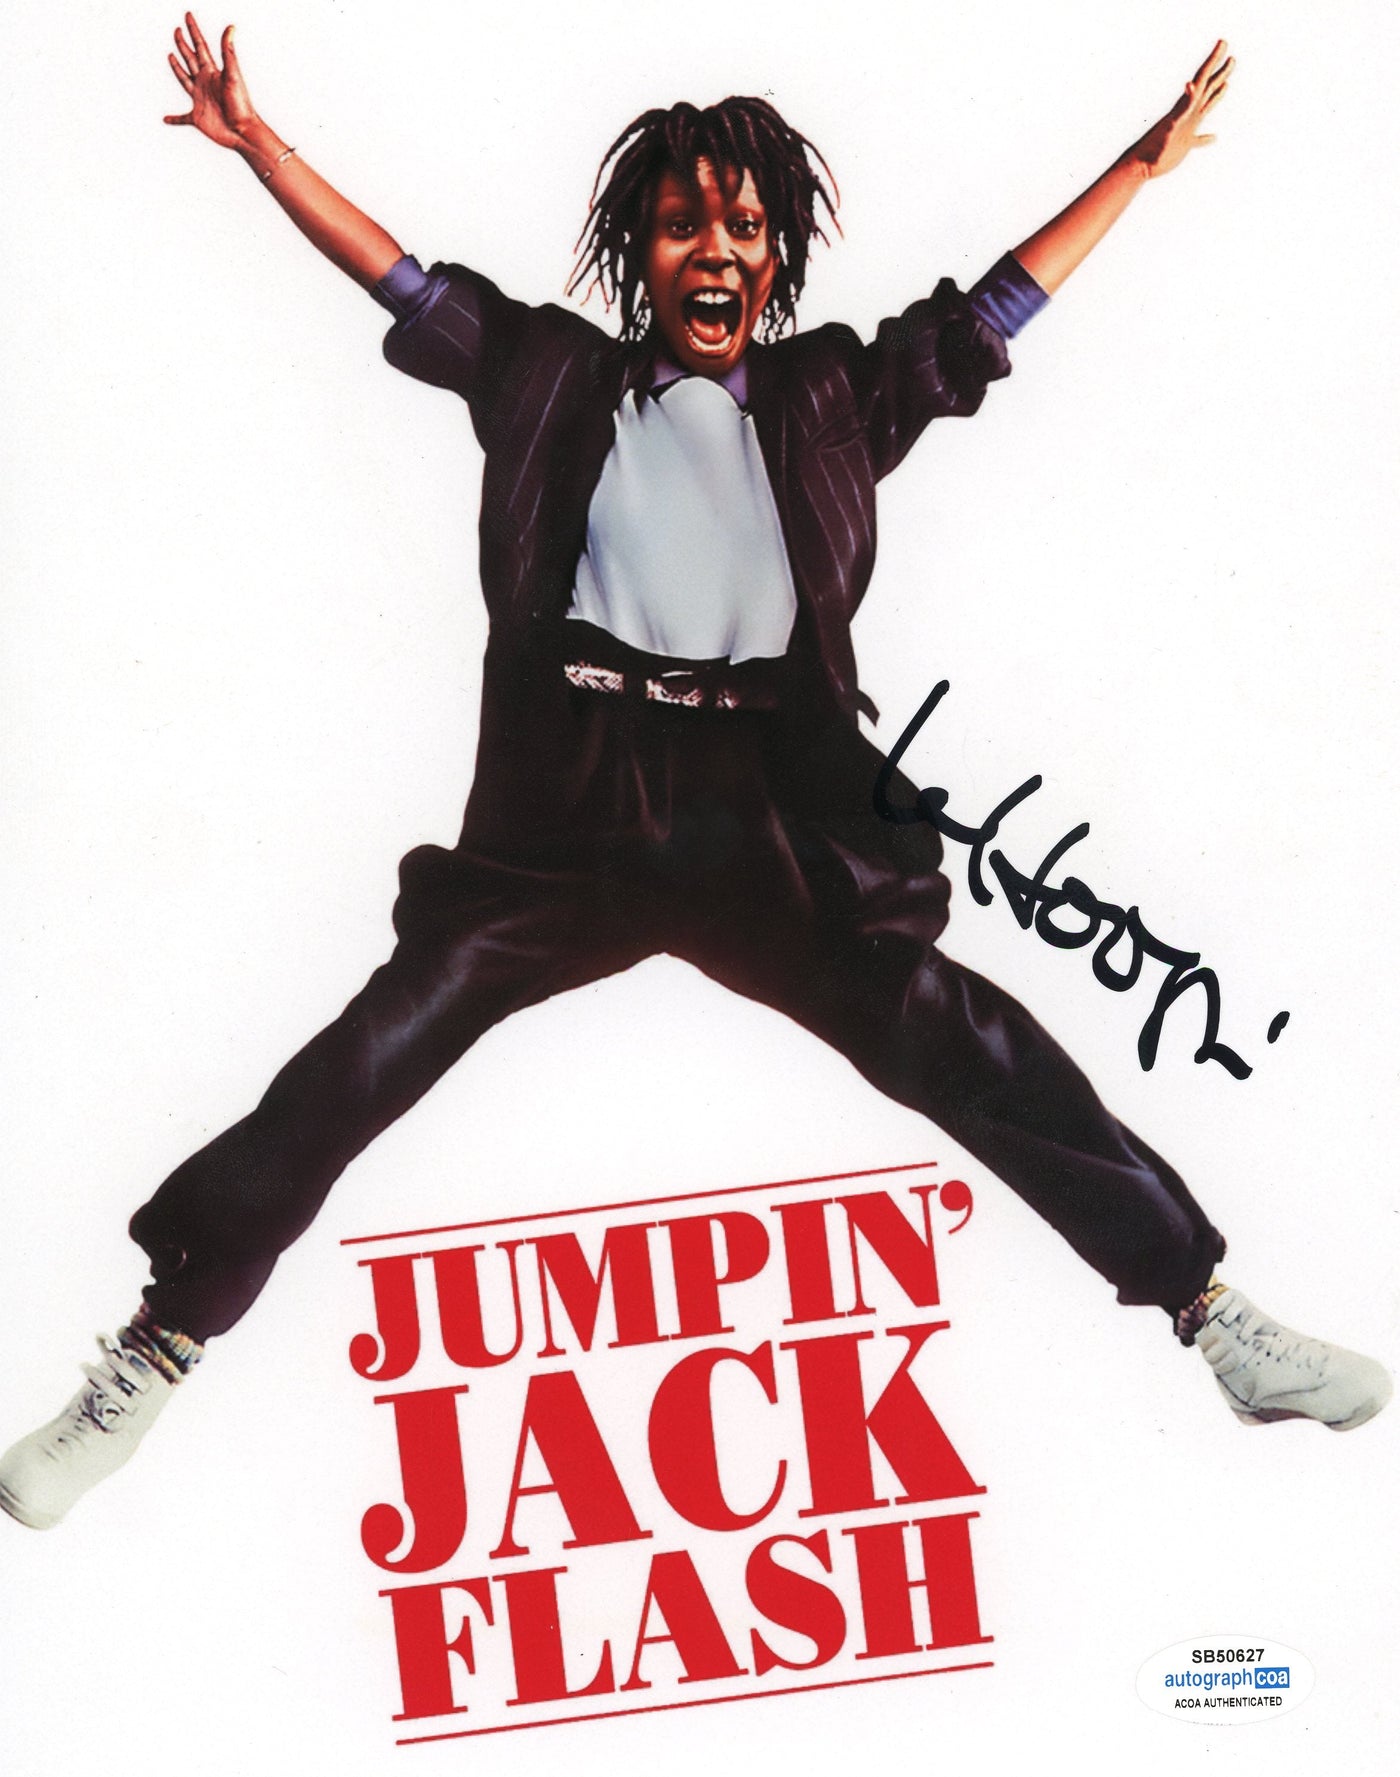 WHOOPI GOLDBERG SIGNED 8X10 PHOTO Jumpin' Jack Flash AUTOGRAPHED ACOA